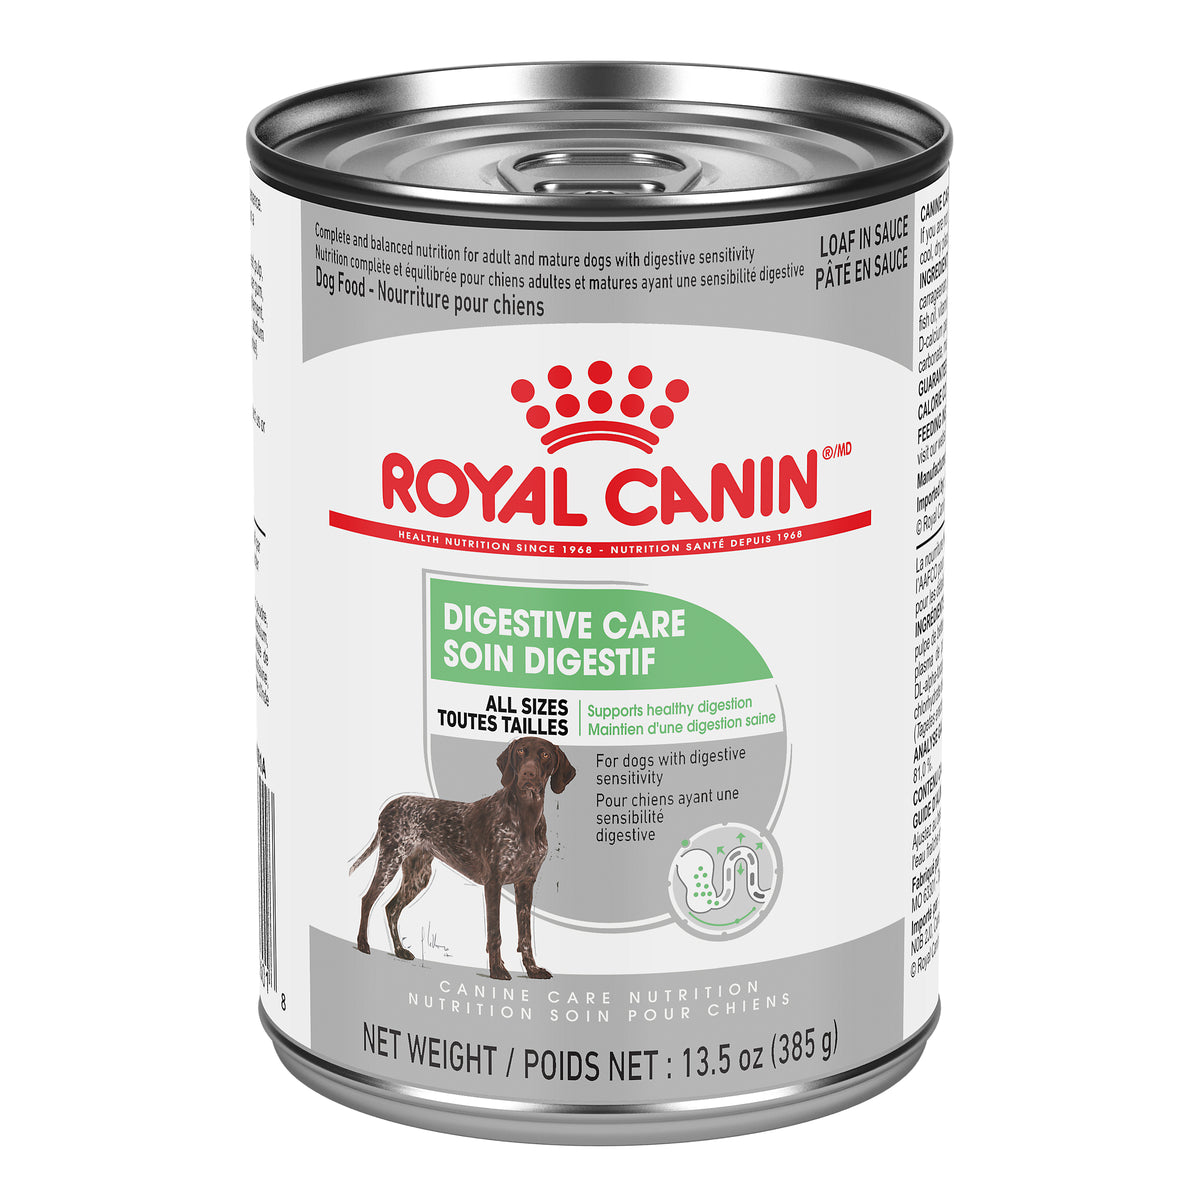 Royal Canin - Nutrition Soin pour Chiens SOIN DIGESTIF pâté en sauce – nourriture humide pour chiens (385g)